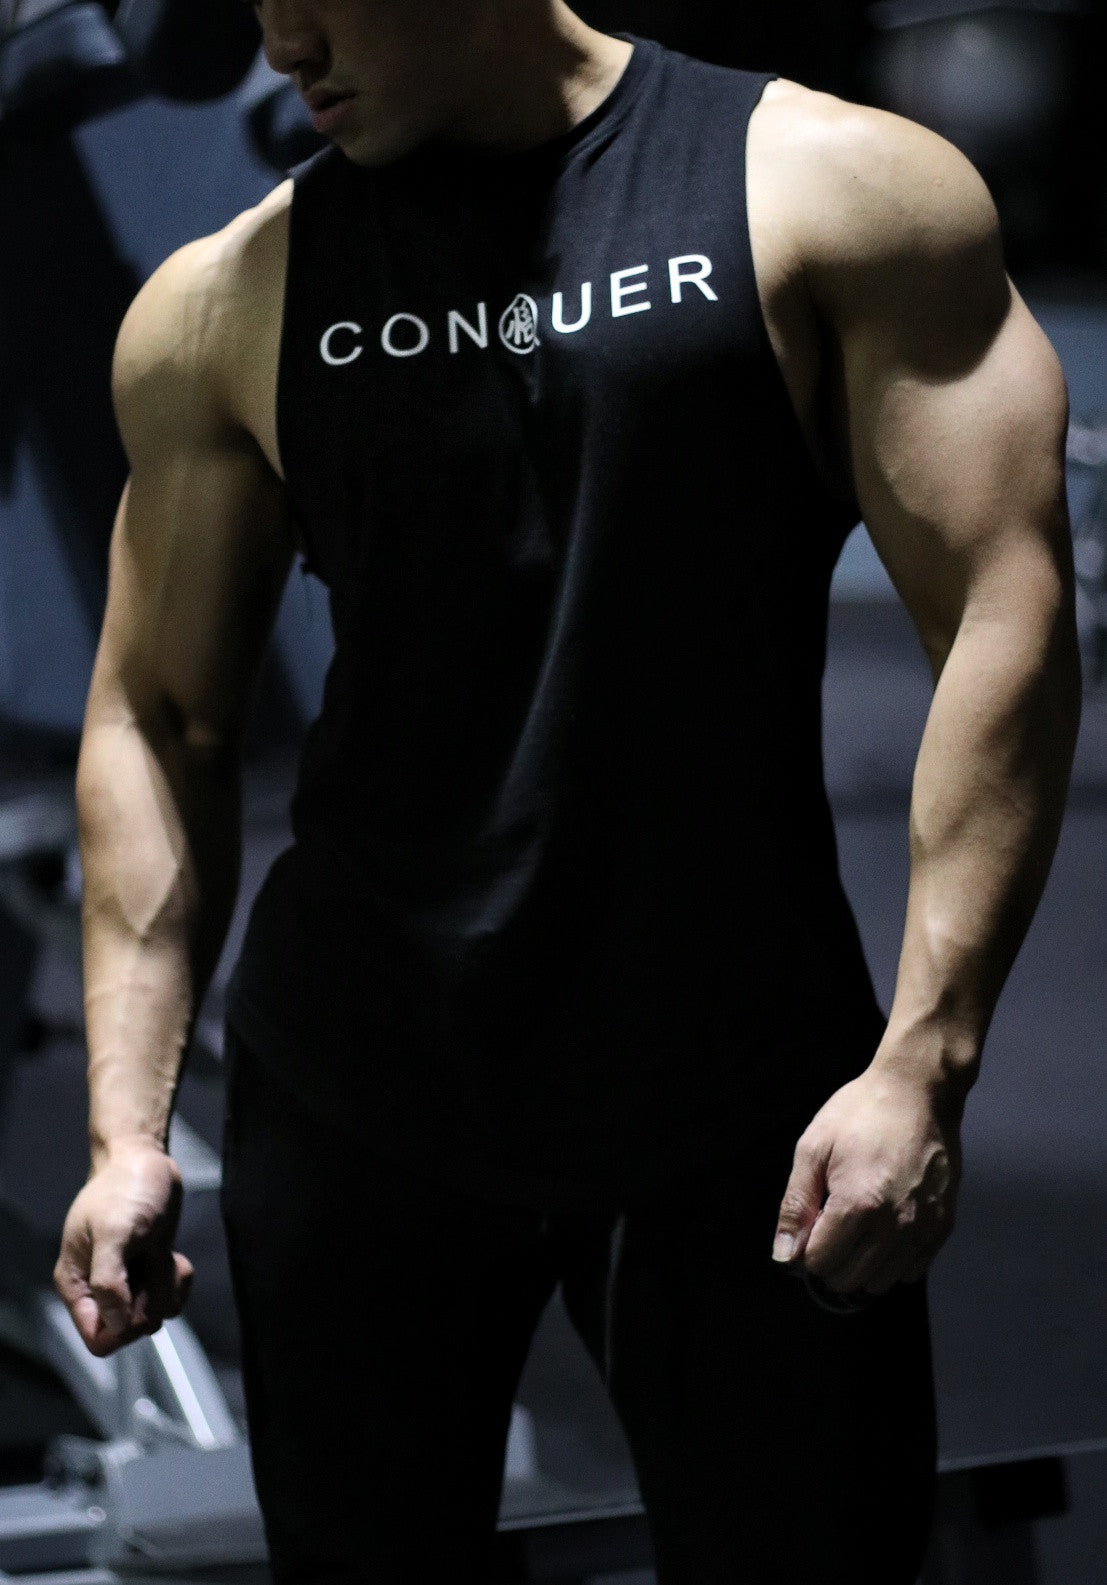 Saiyan Evolution' Long Sleeve Super Slim Fitted Compression Shirt - C